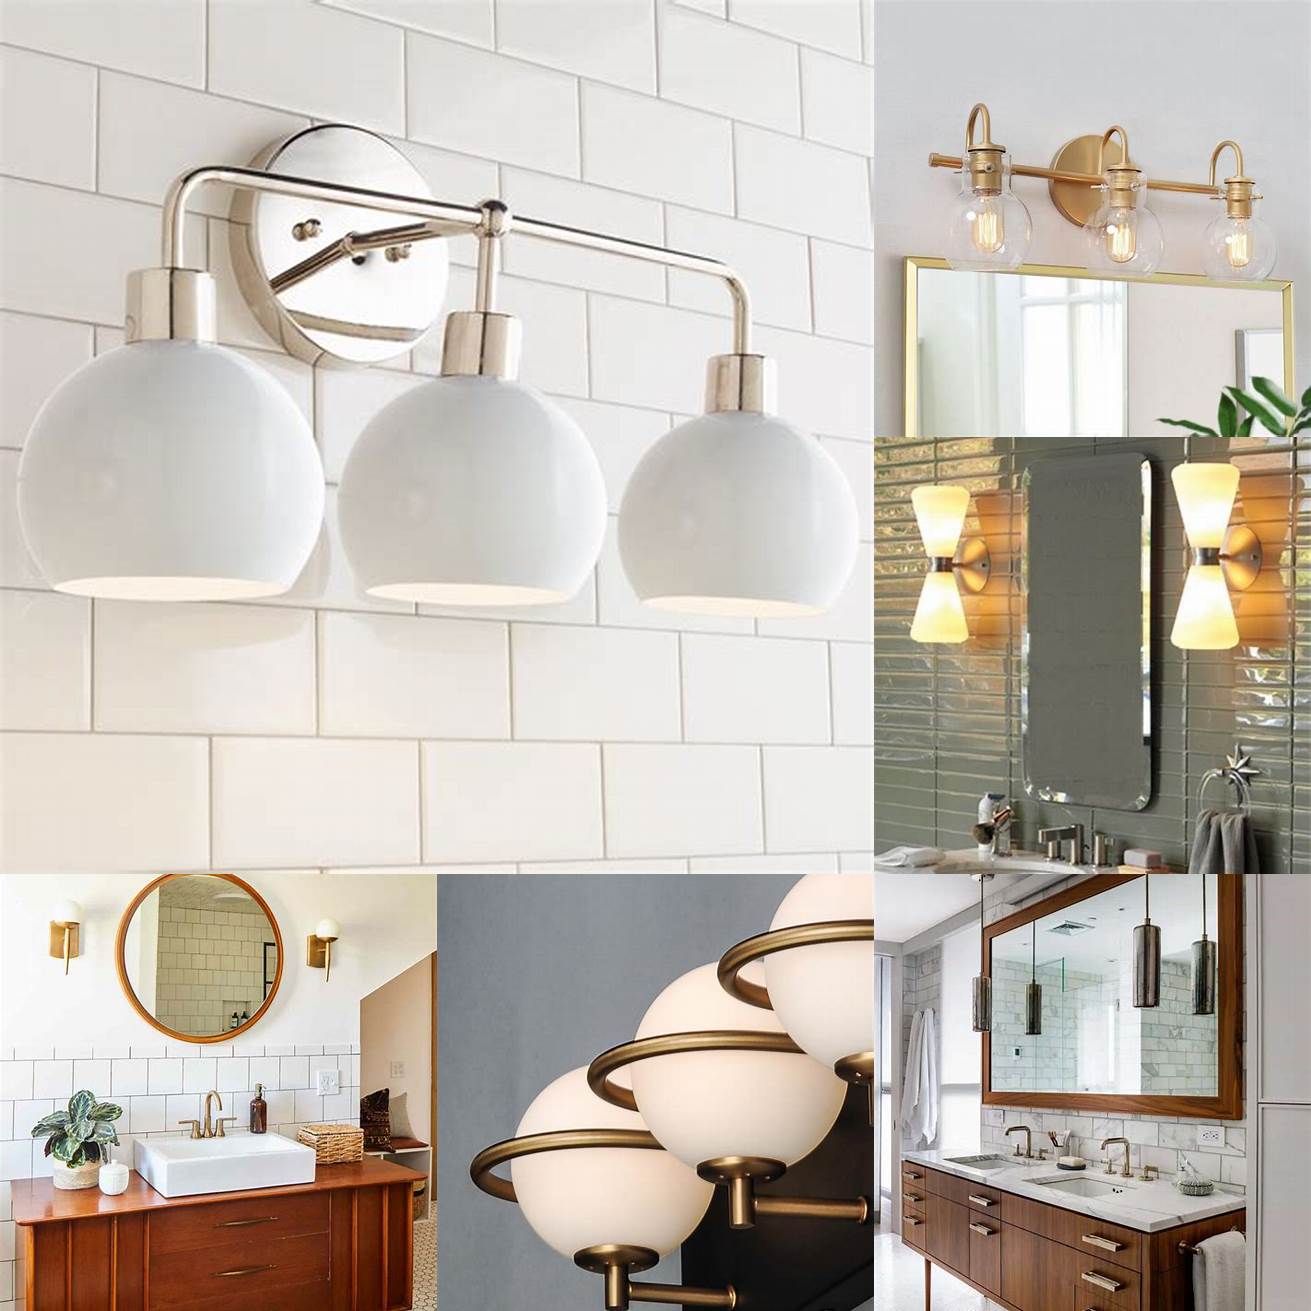 Mid-century modern vintage bathroom vanity lights